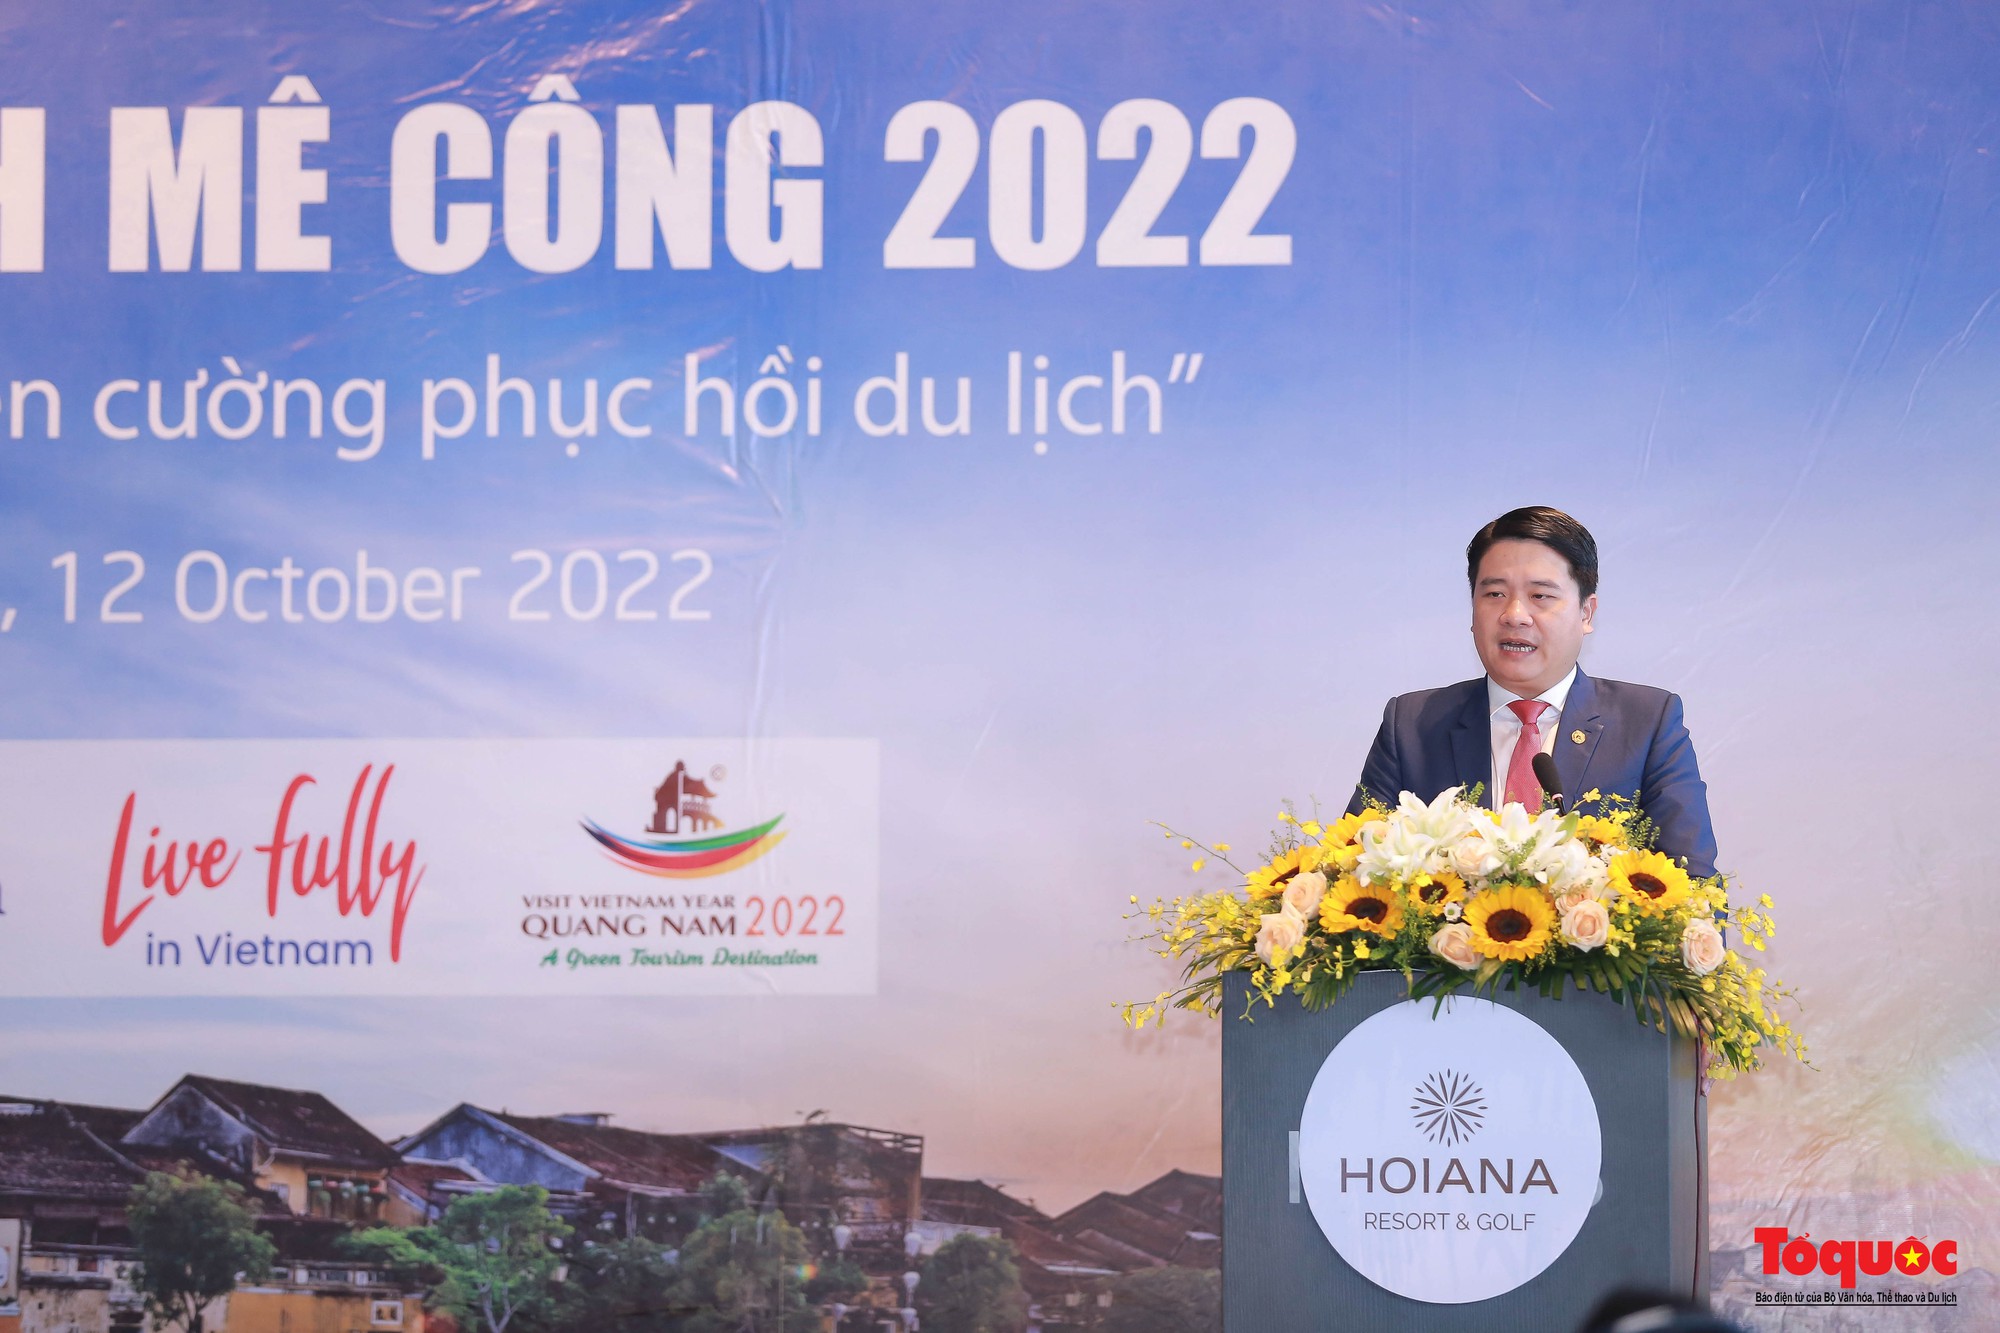 Khai mạc Diễn đàn Du lịch Mê Công 2022: Cùng nhau hành động, hướng tới mục tiêu phục hồi ngành du lịch Mê Công - Ảnh 4.